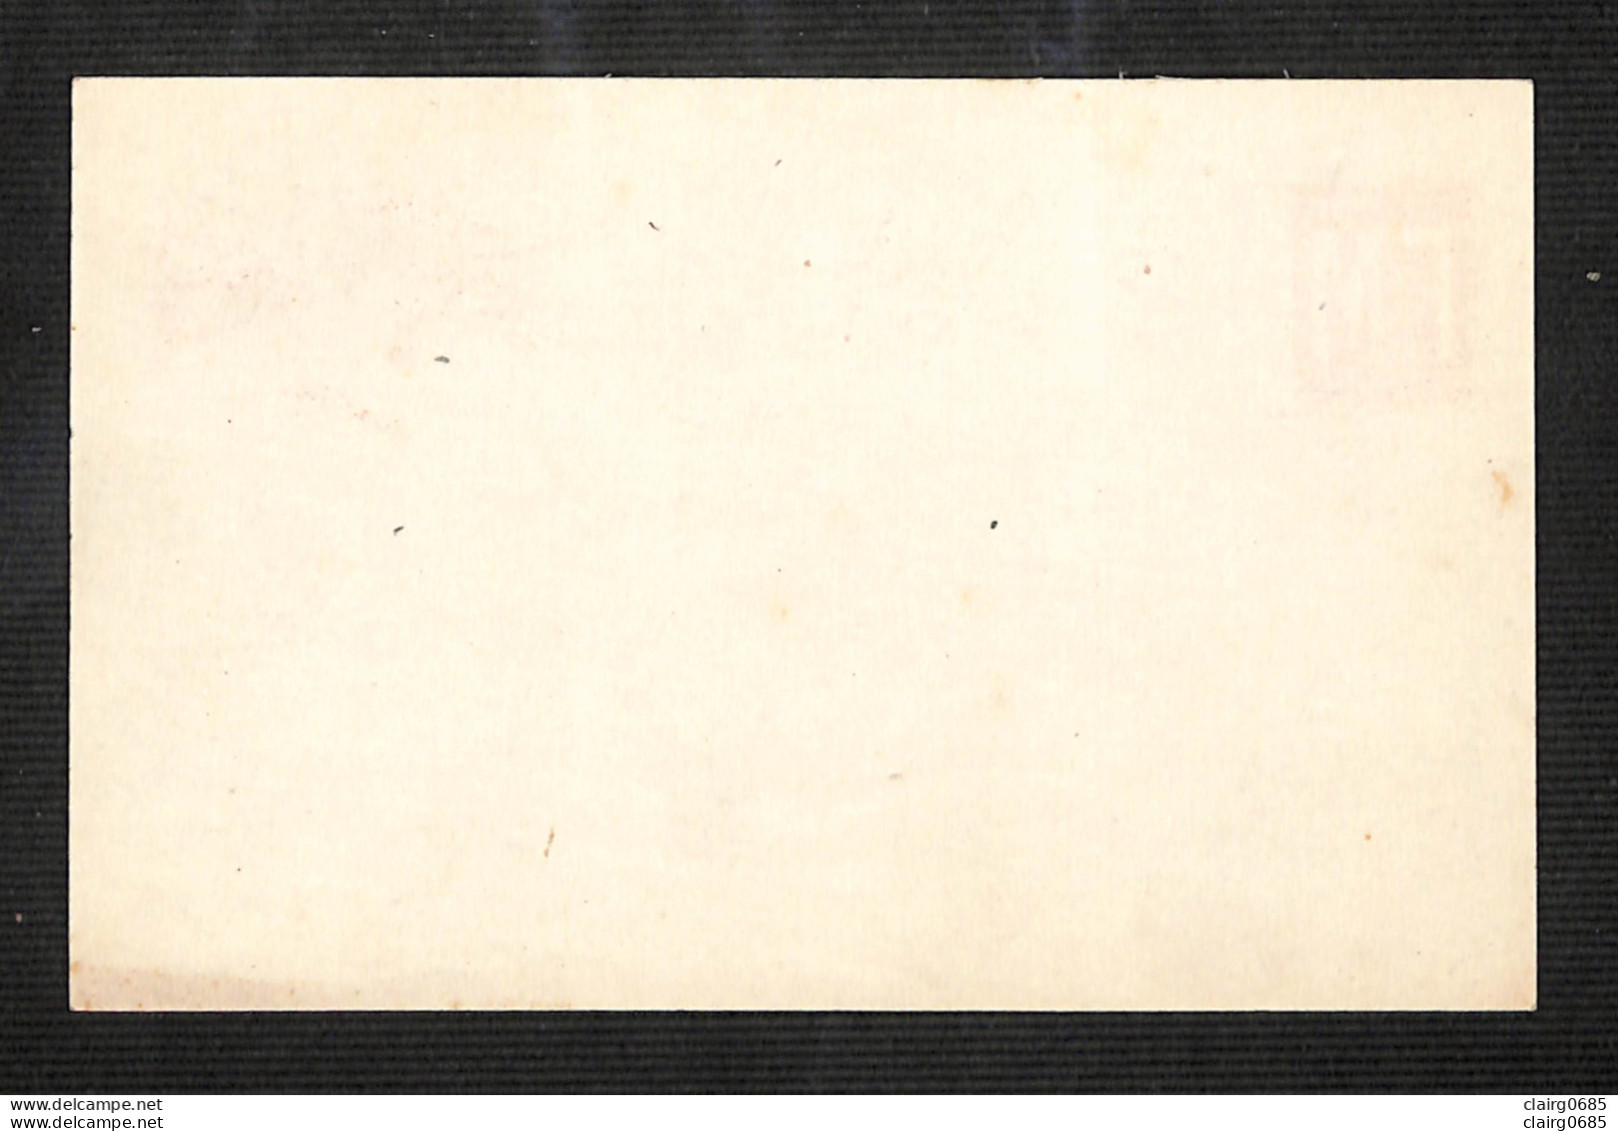 MILITARIA - Carte Drapeaux (Angleterre, France, Etats-unis) Correspondance Des Armées De La République - FM - 1914  - Documenten